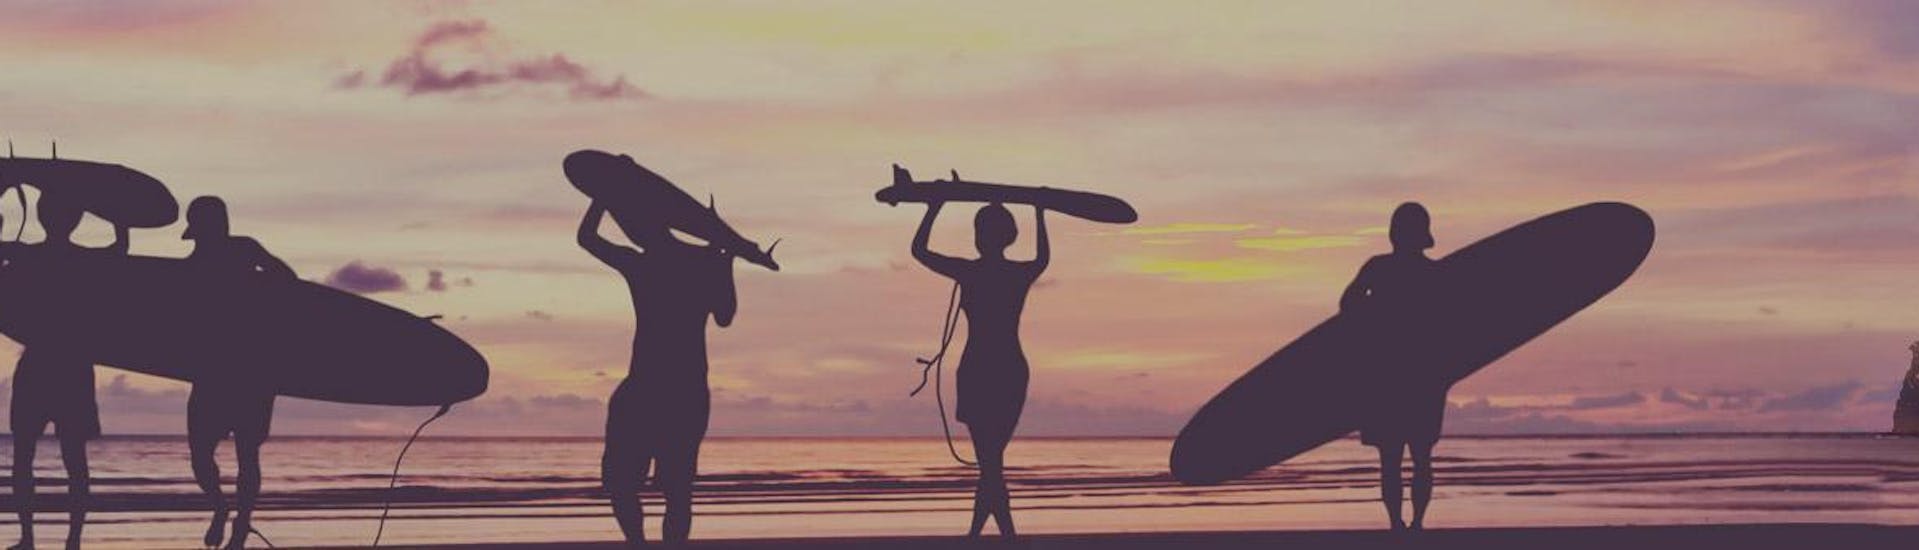 Les surfeurs marchent sur la plage au coucher du soleil avec leur planche de surf sur la tête ou sous le bras à la fin de leur cours de surf à Hendaye avec l'École de surf Hendaia.